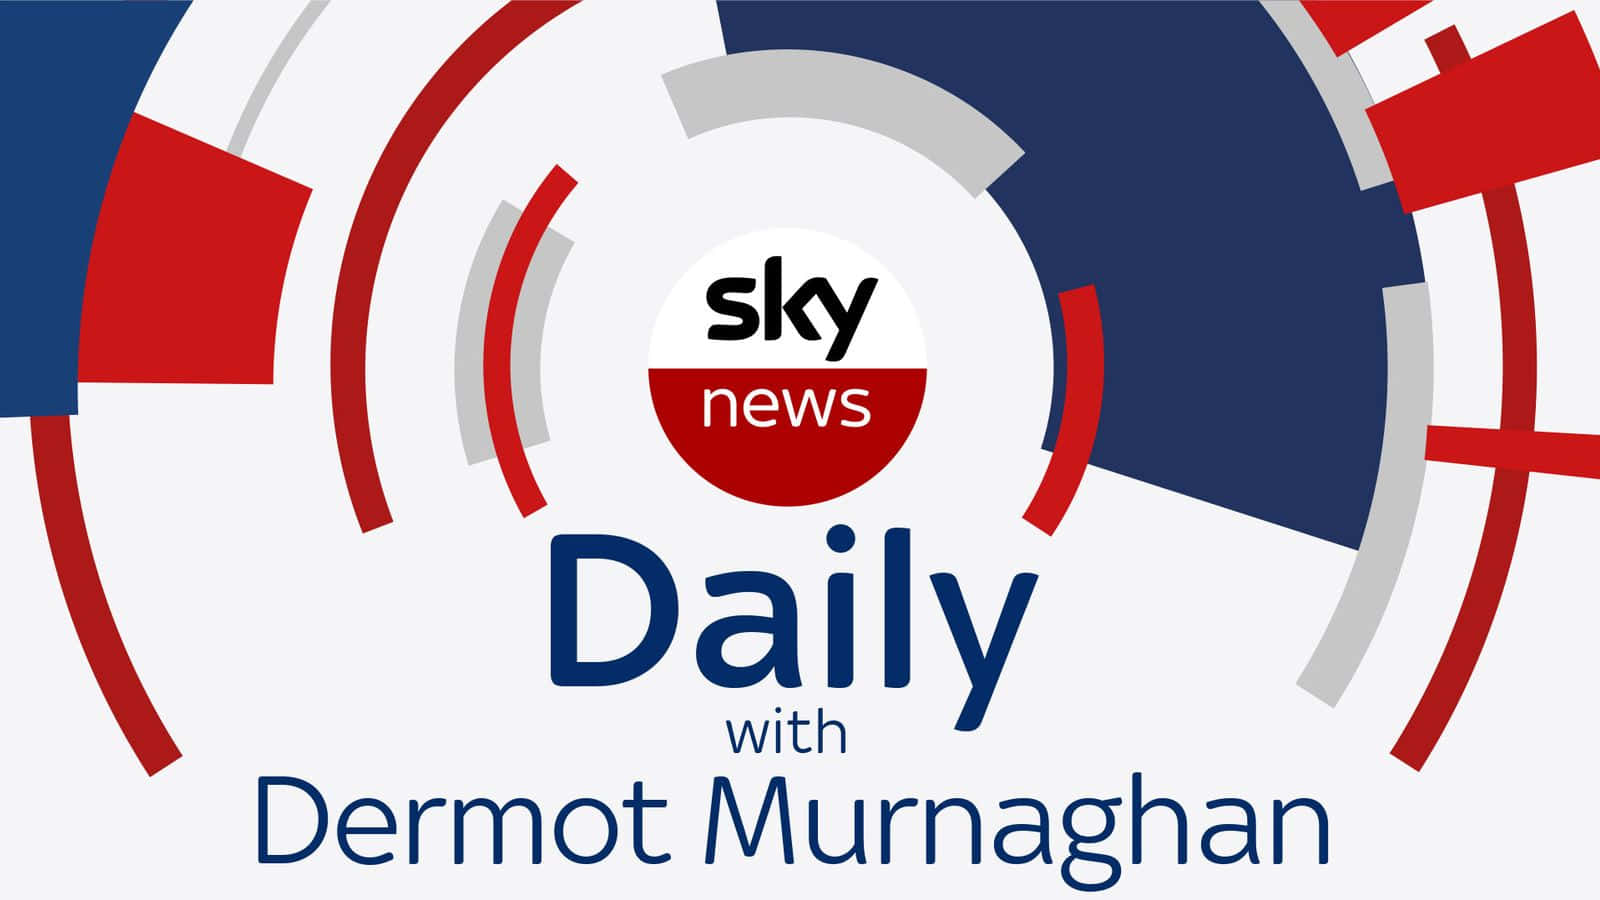 Sky News With Dermot Murnaghan Wallpaper